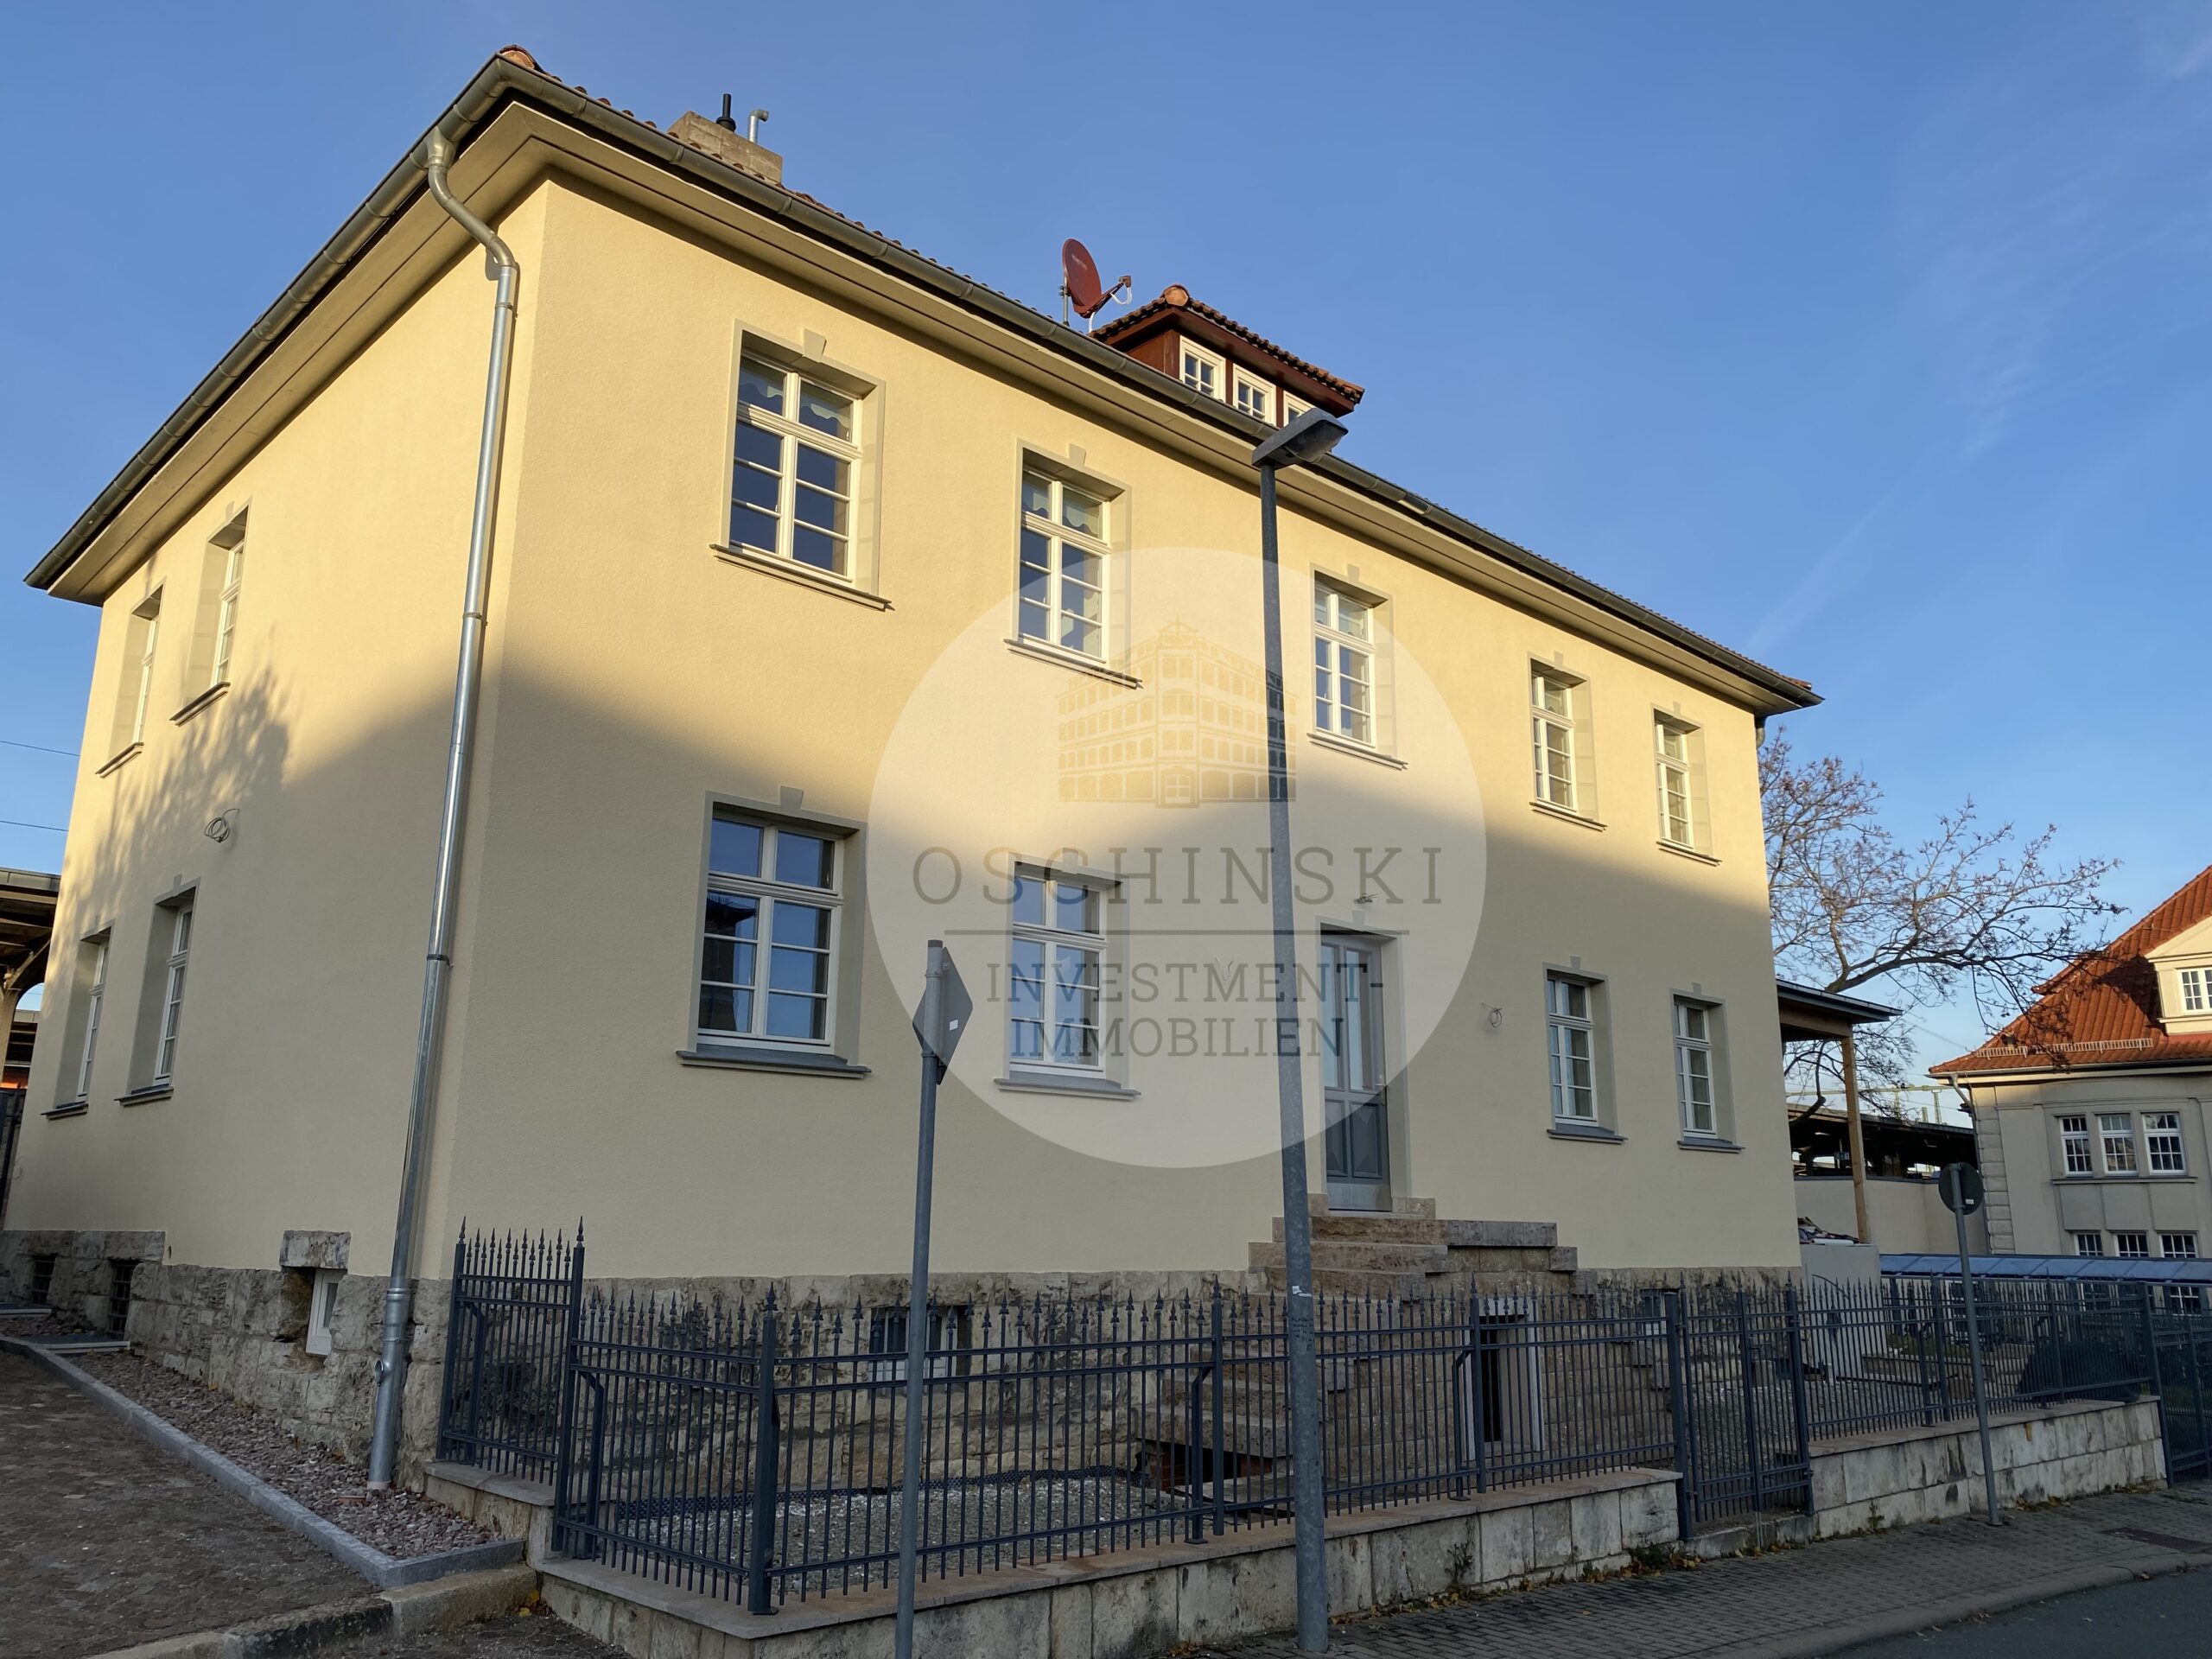 Sanierte Gewerbeimmobilie in hoch frequentierter Lage in Weimar